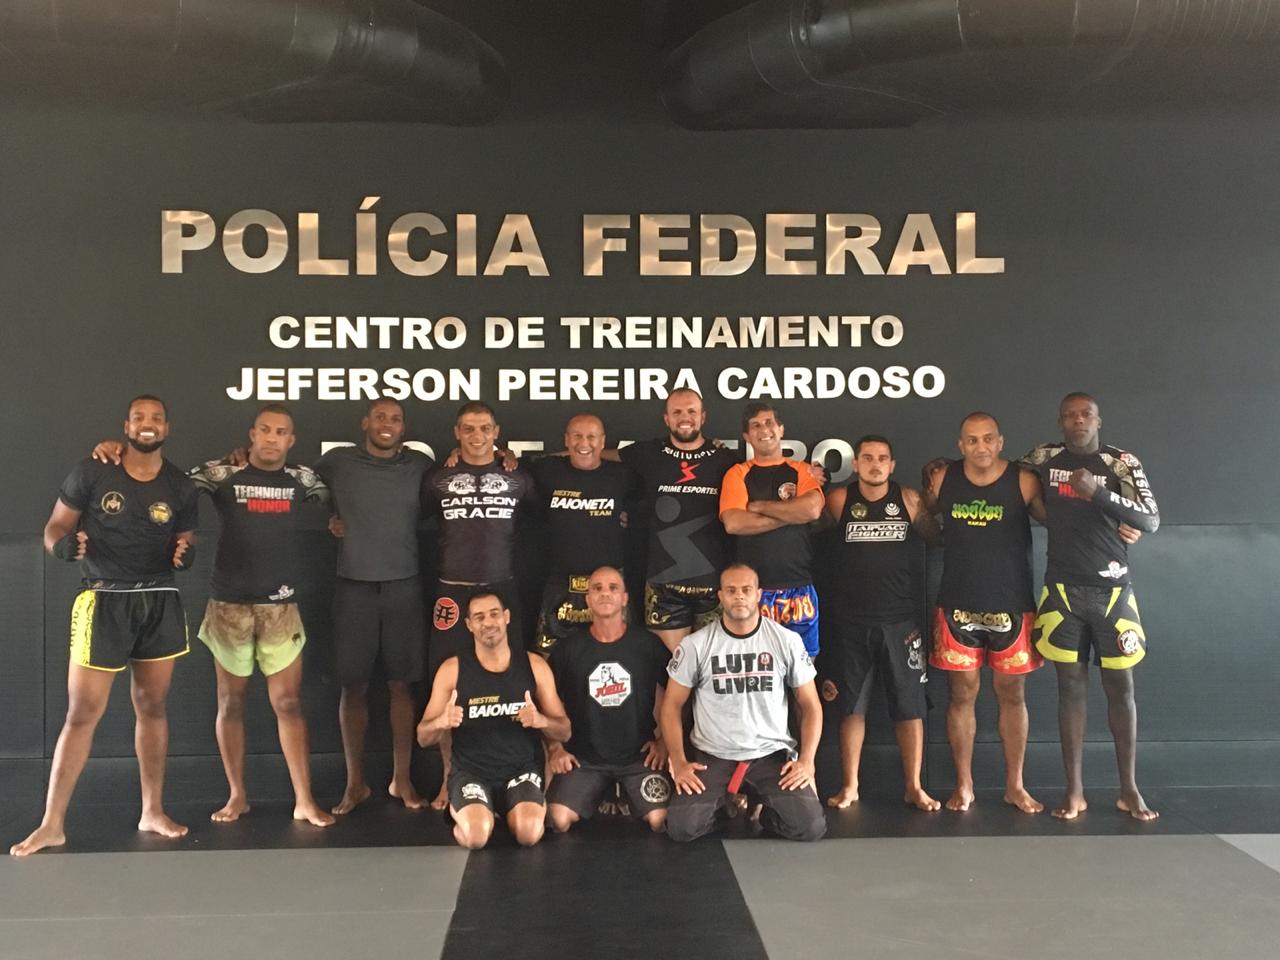 Polícia Federal realiza 1º Encontro de Treinadores de Defesa Pessoal das Forças de Segurança nesta sexta (14), no Rio